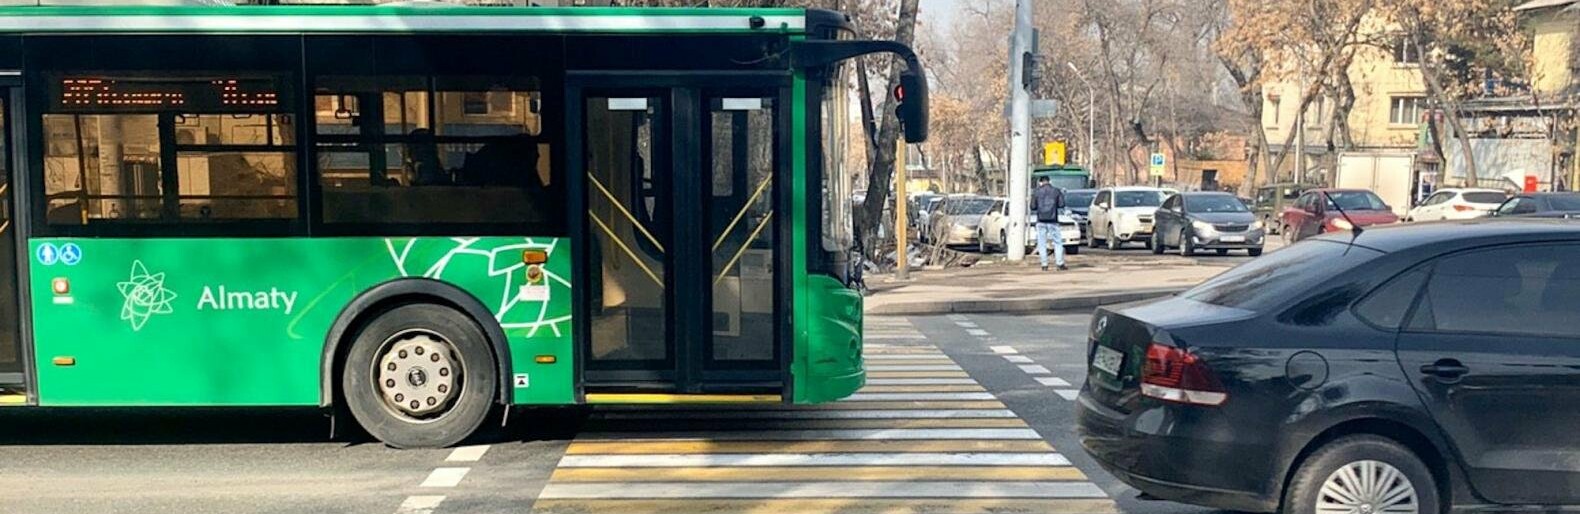 В Алматы водителя автобуса оштрафовали за вредные выбросы